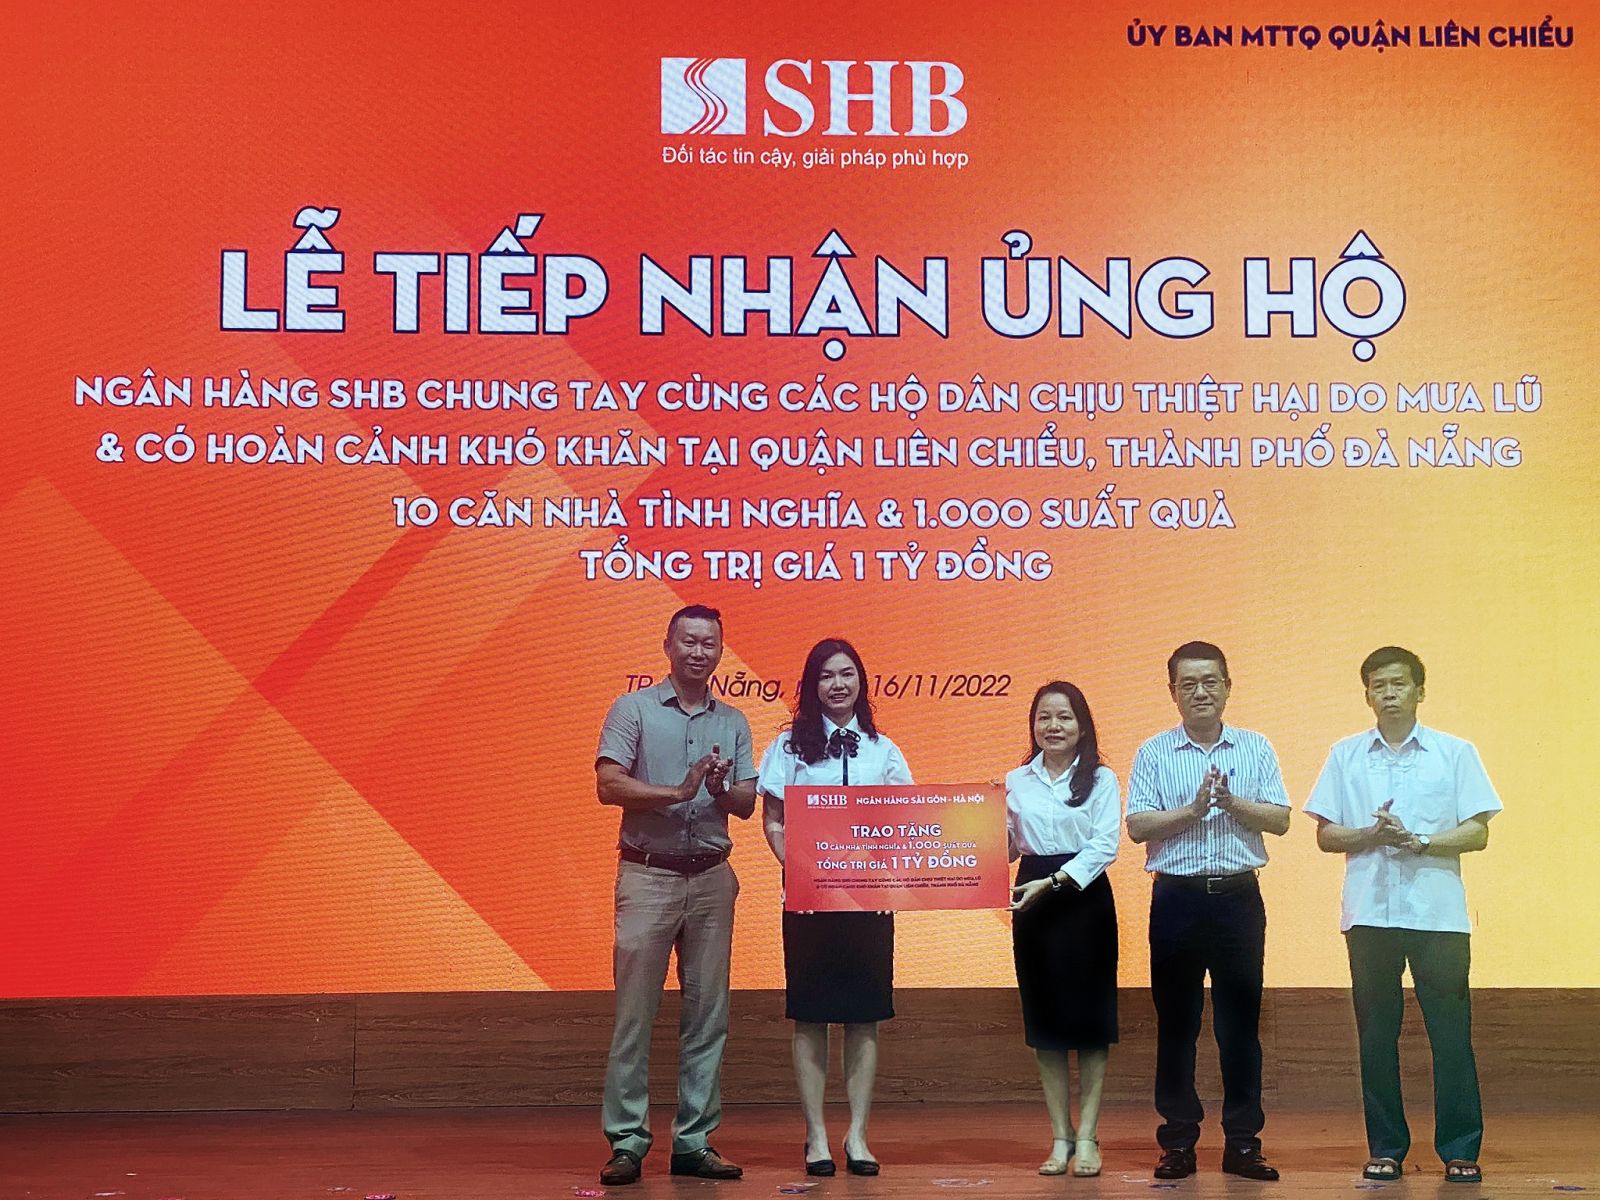 Ngân hàng SHB ủng hộ 1 tỷ đồng nhằm chia sẻ khó khăn với người dân chịu thiệt hại do mưa lũ tại Quận Liên Chiểu, TP Đà Nẵng